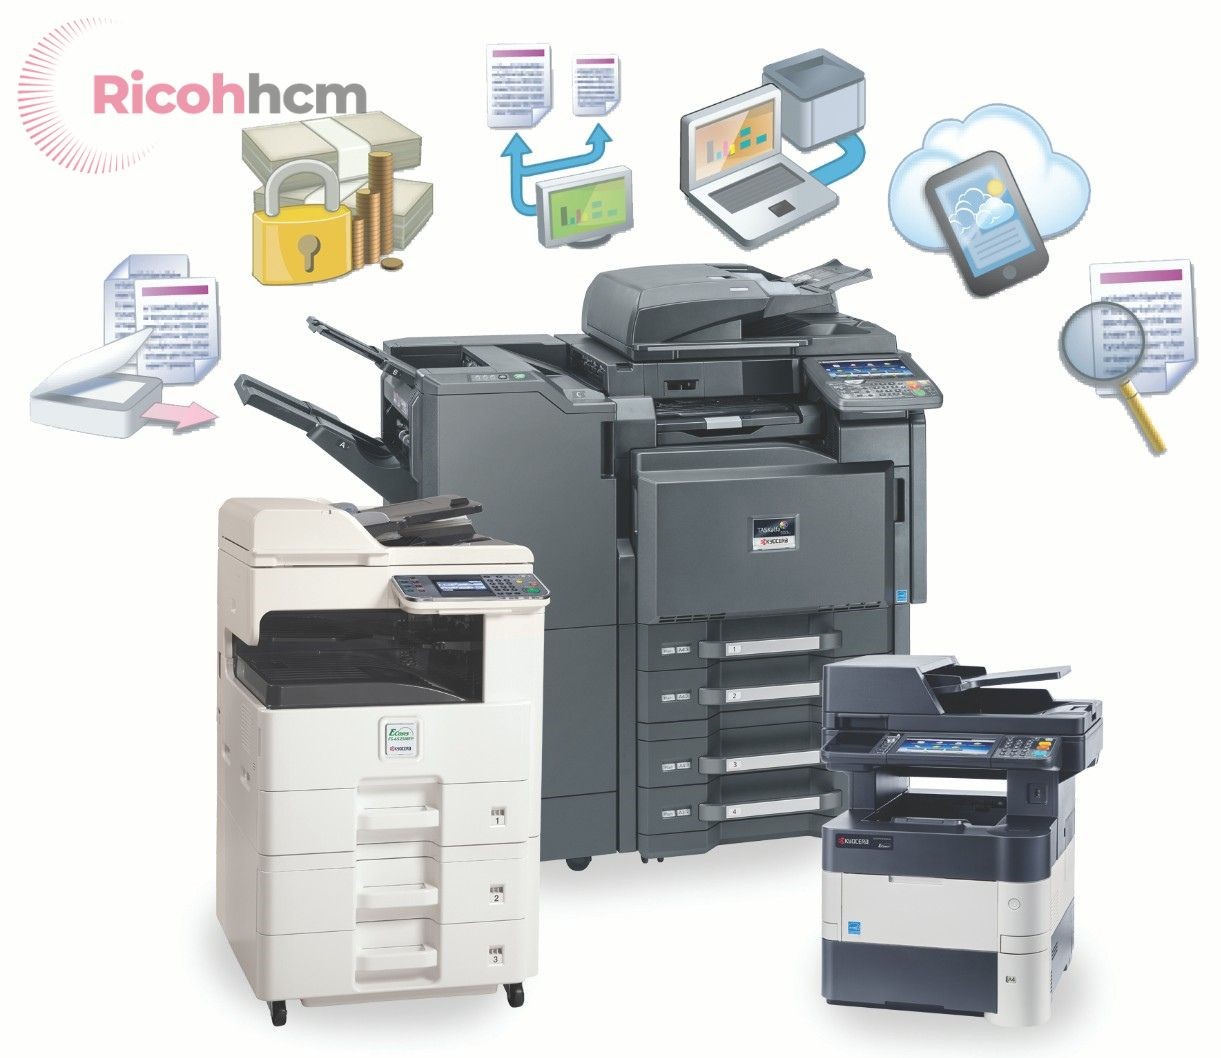 Đến với Đức Lan - đơn vị hàng đầu bán máy photocopy quận 6 , bạn có thể tìm thấy: máy photocopy nhập khẩu 100%, thời gian bảo hành lâu dài lên đến 3 năm, giá cả rất cạnh tranh, bảo hành hậu mãi được bảo đảm....